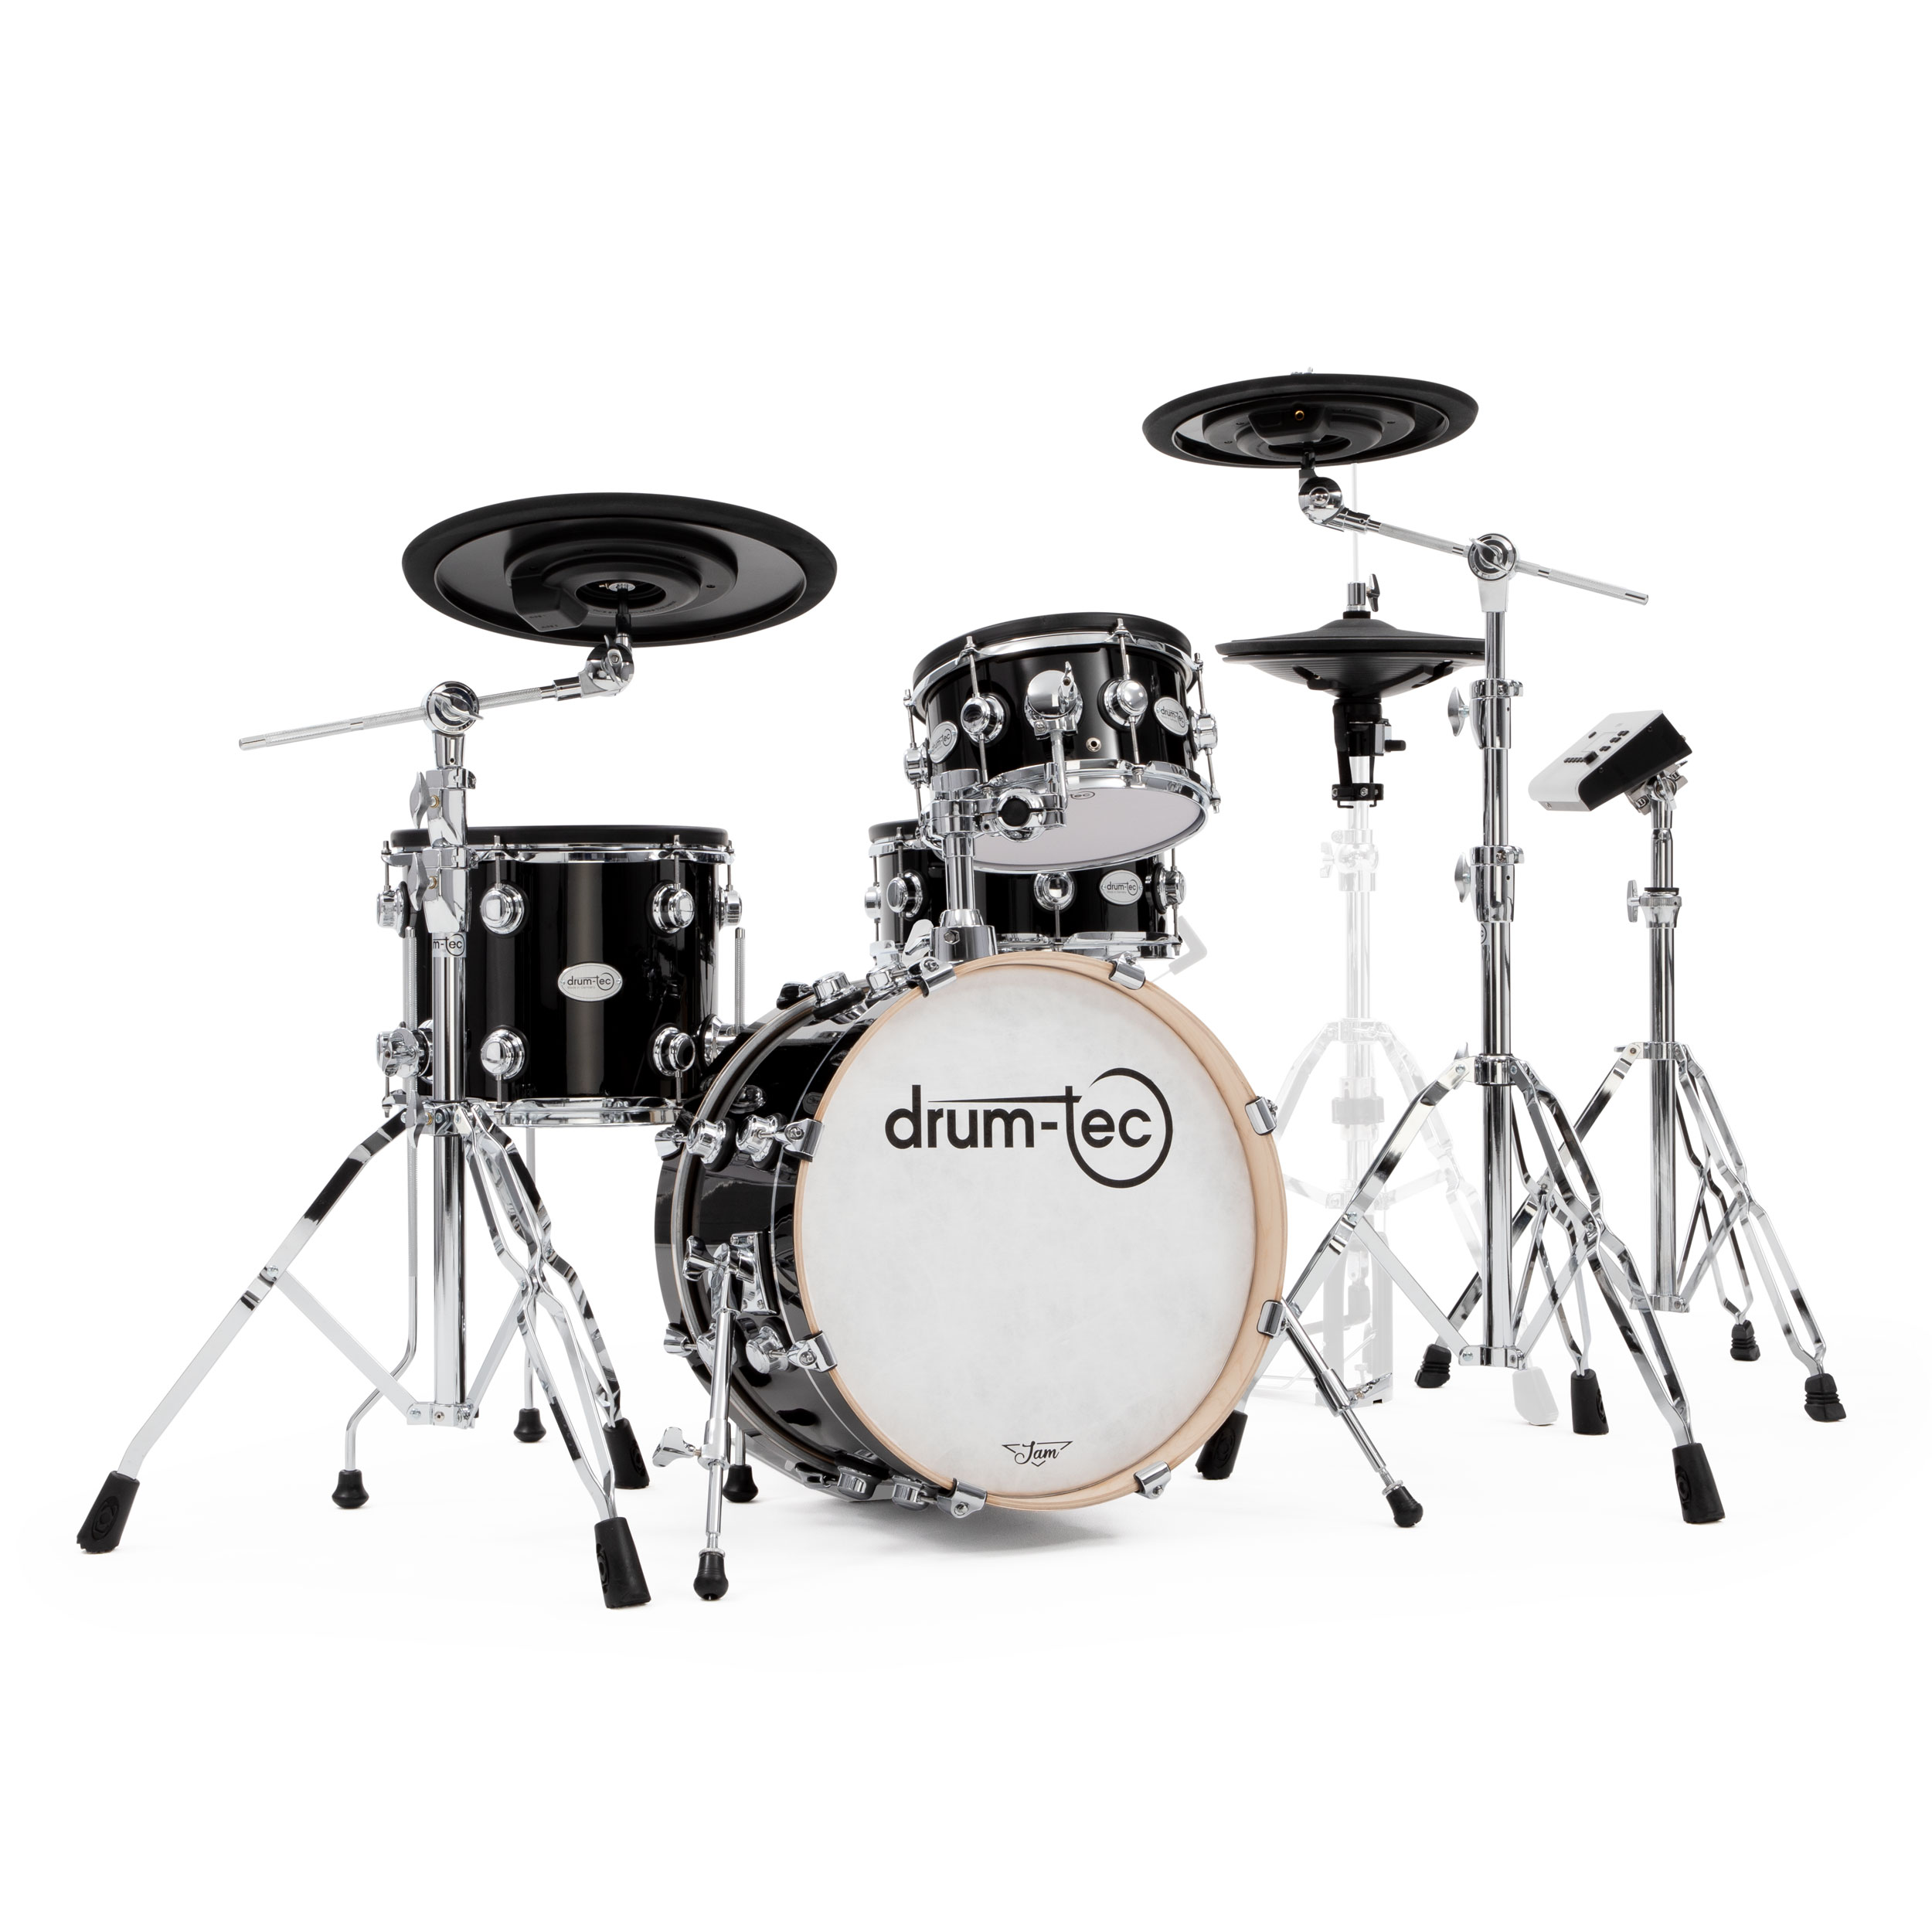 drum-tec Jam 3 with ATV xD3 and ZEITGEIST ECP-Cymbals